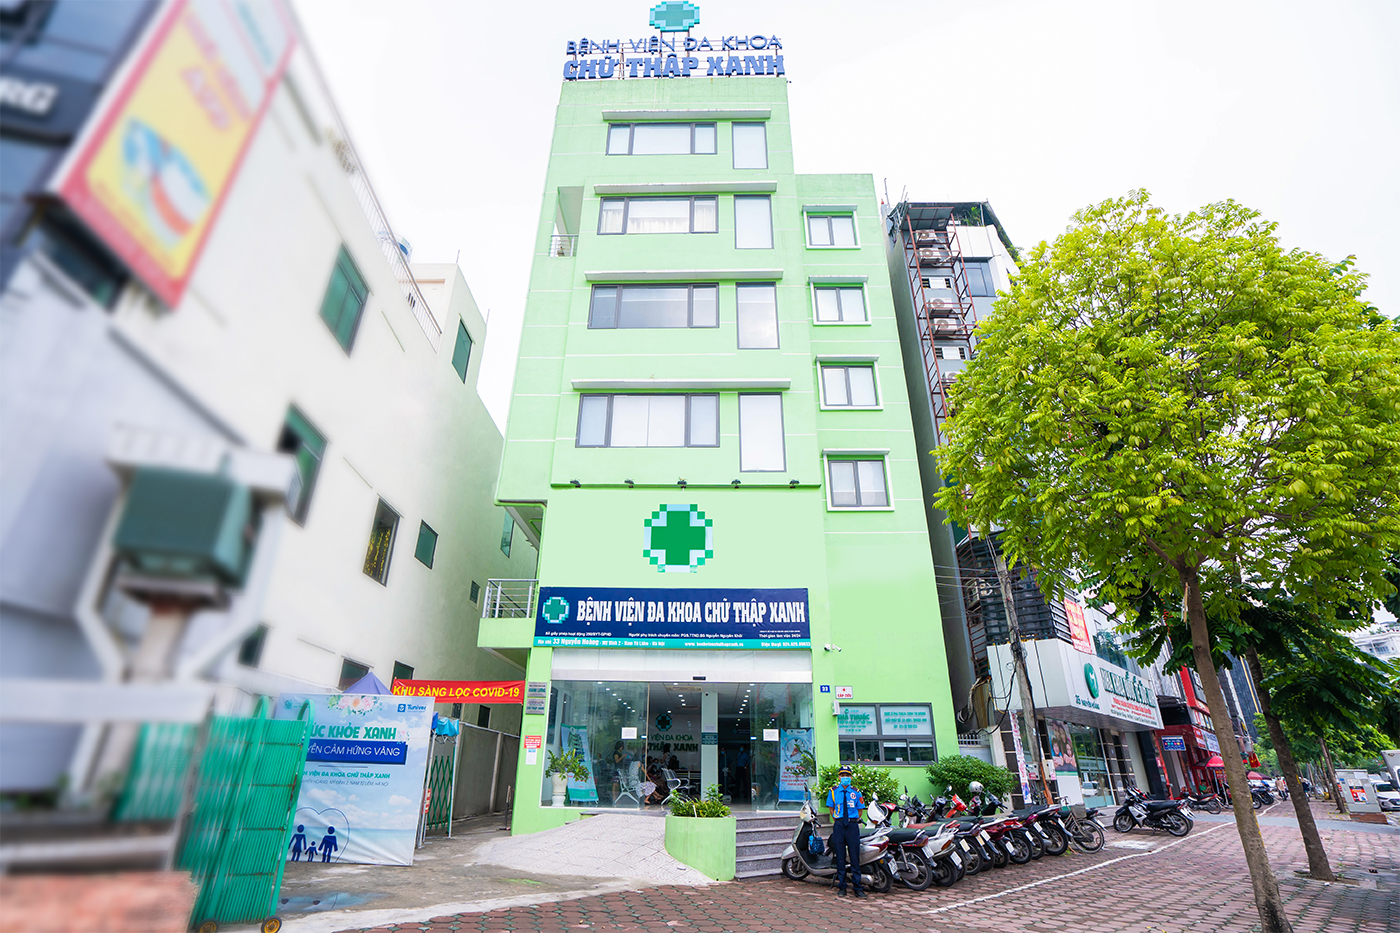 Bệnh viện Khánh Lương (Bệnh viện đa khoa chữ thập xanh)